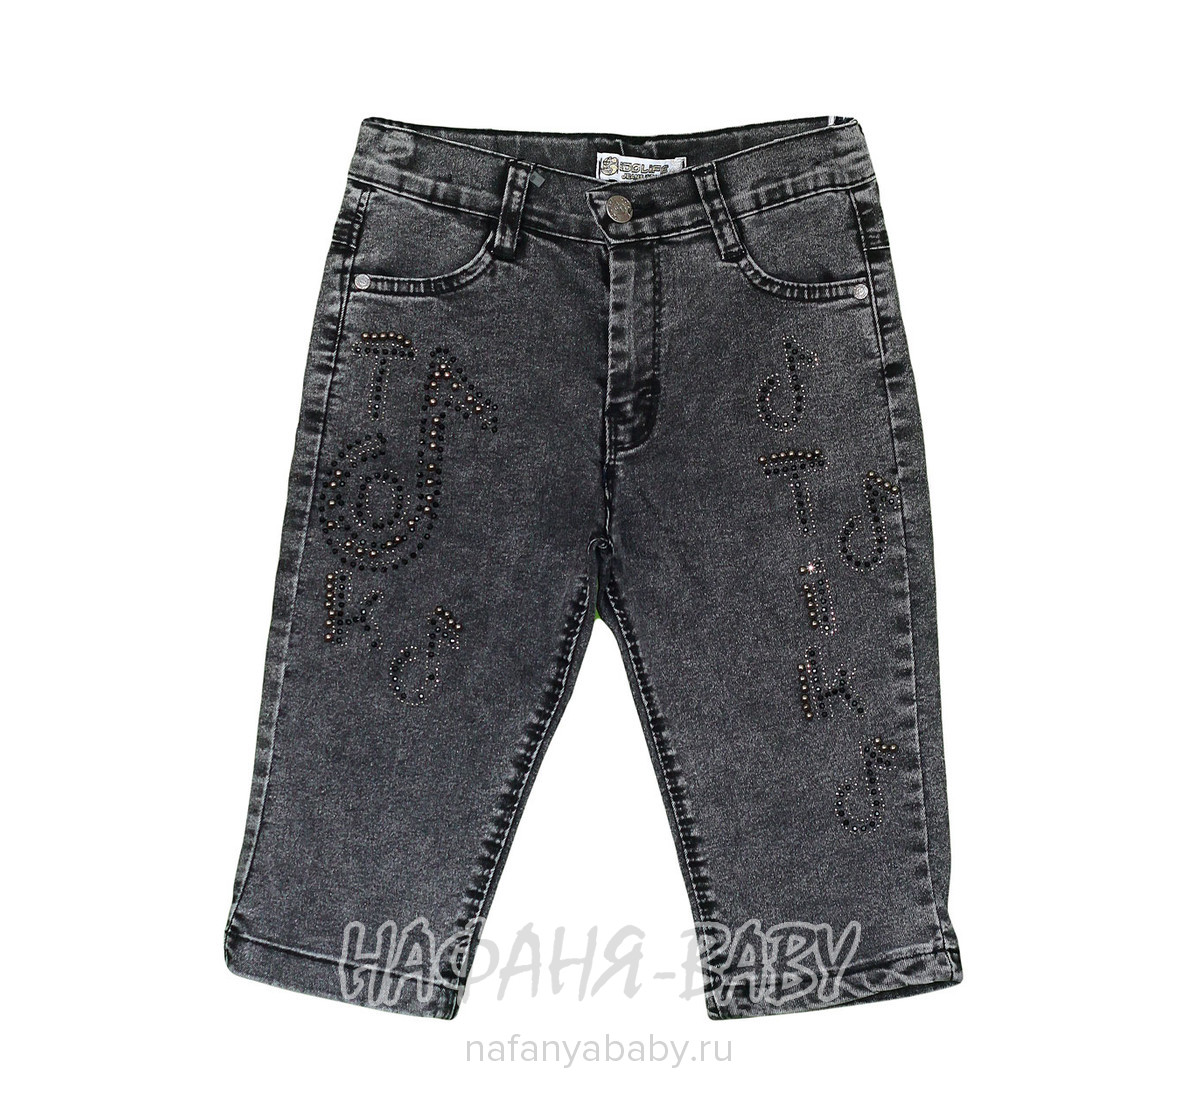 Детские джинсовые шорты IDO LIFE, купить в интернет магазине Нафаня. арт: 867 8-12.